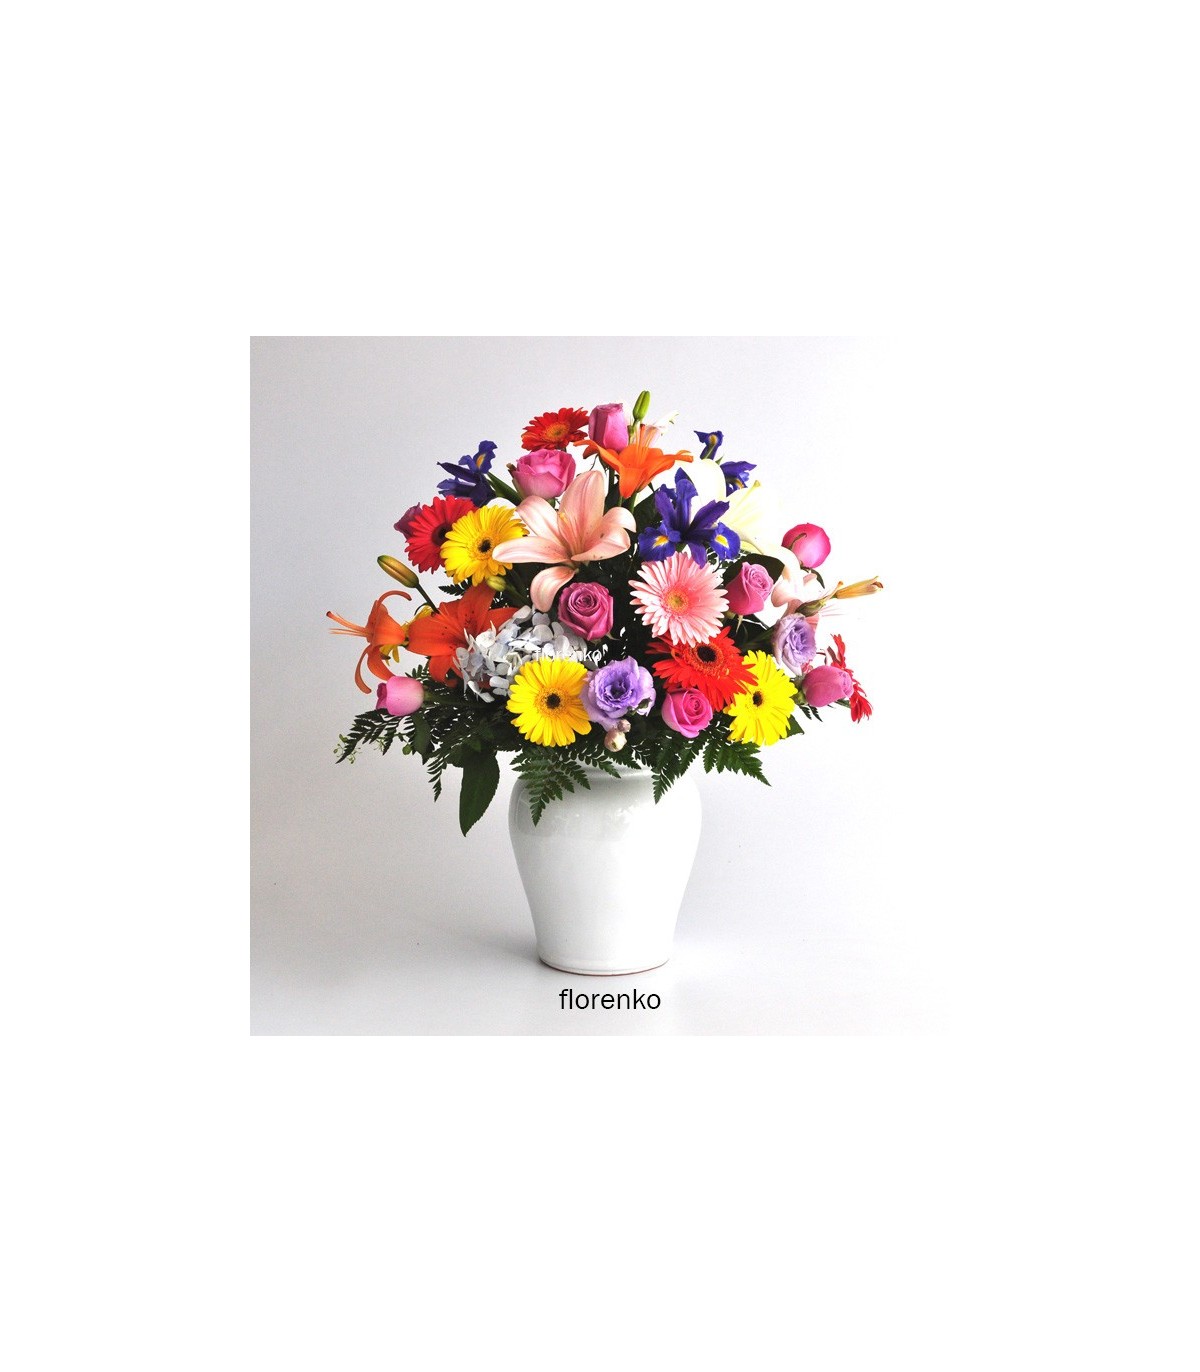 Hermosa y primaveral composición de gerberas, rosas, lilis, iris y más